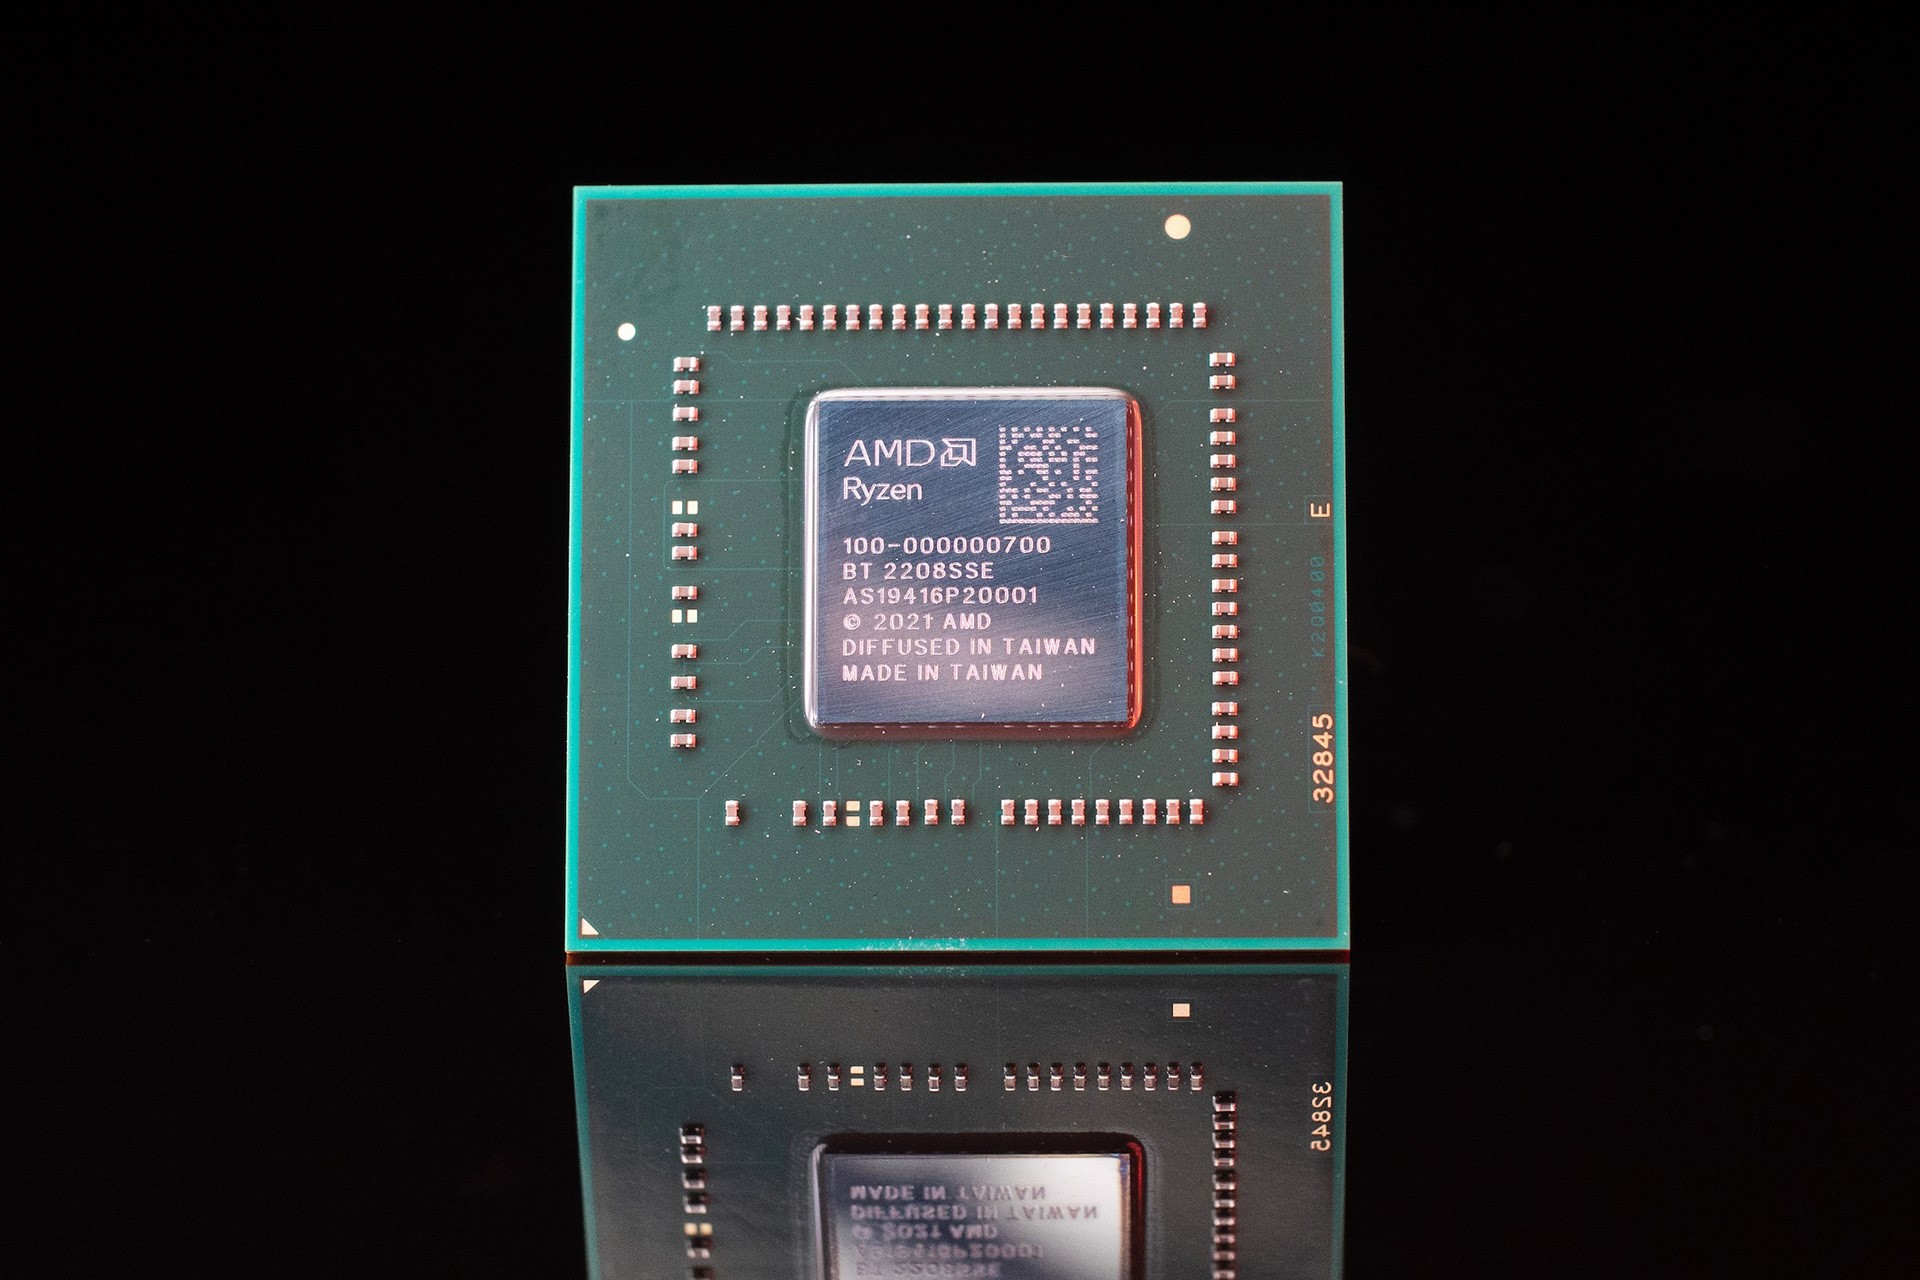 AMD ra mắt dòng CPU Ryzen 7020 cho thiết bị di động, thời lượng pin kéo dài tới 12 tiếng - Ảnh 2.